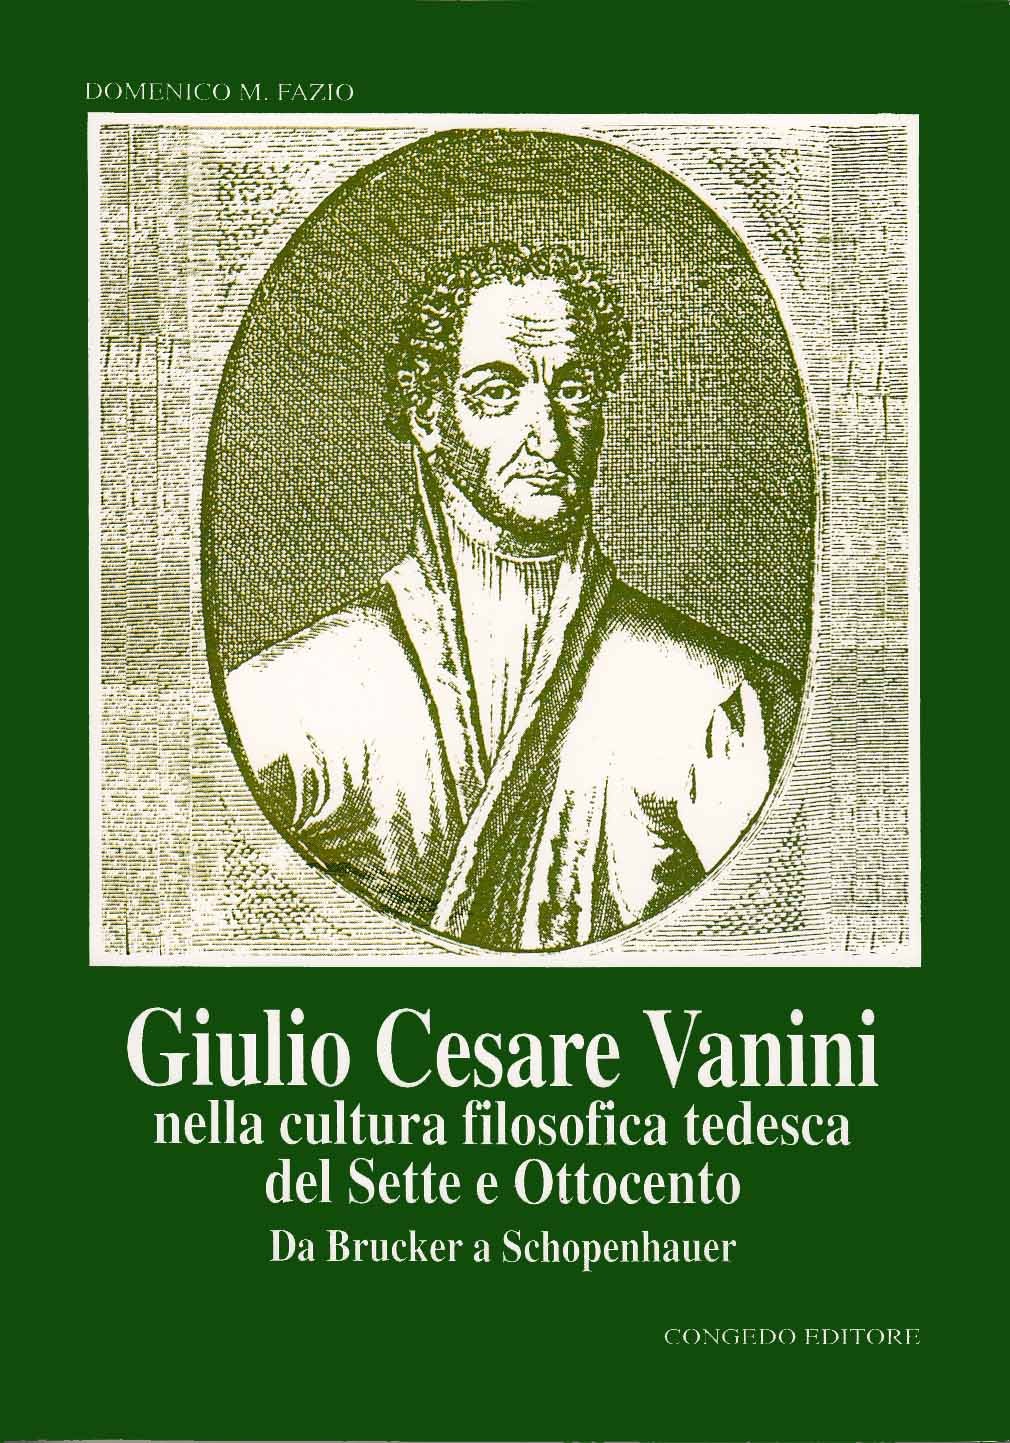 Giulio Cesare Vanini nella cultura filosofica tedesca del Sette e Ottocento. Da Brucker a Schopenhauer